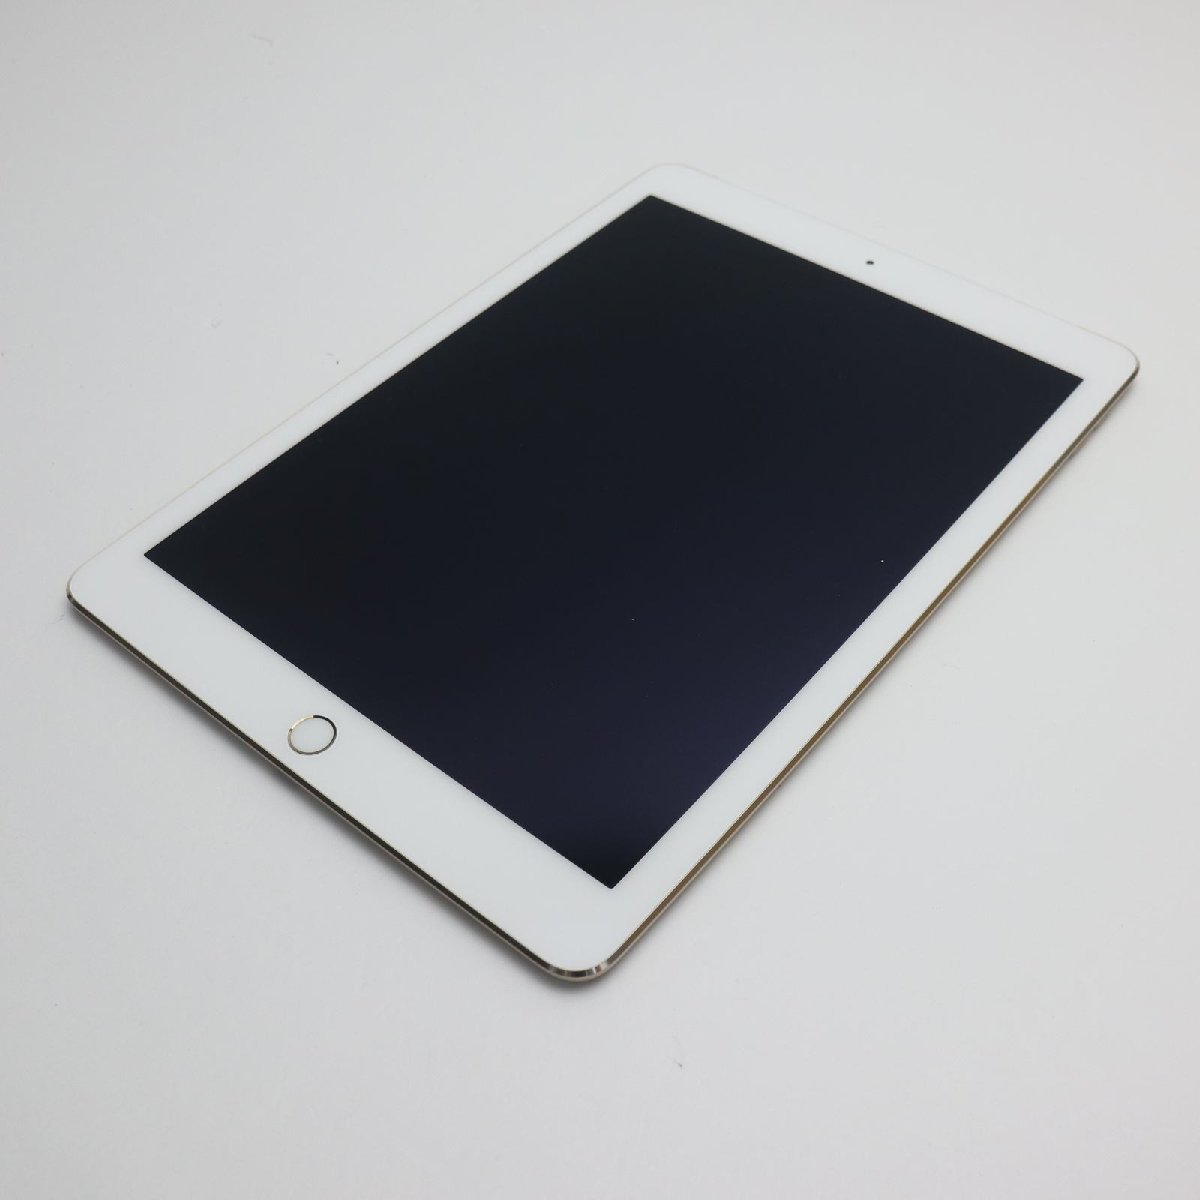 超美品 SOFTBANK iPad Air 2 Cellular 16GB ゴールド 即日発送 タブレットApple 本体 あすつく 土日祝発送OK